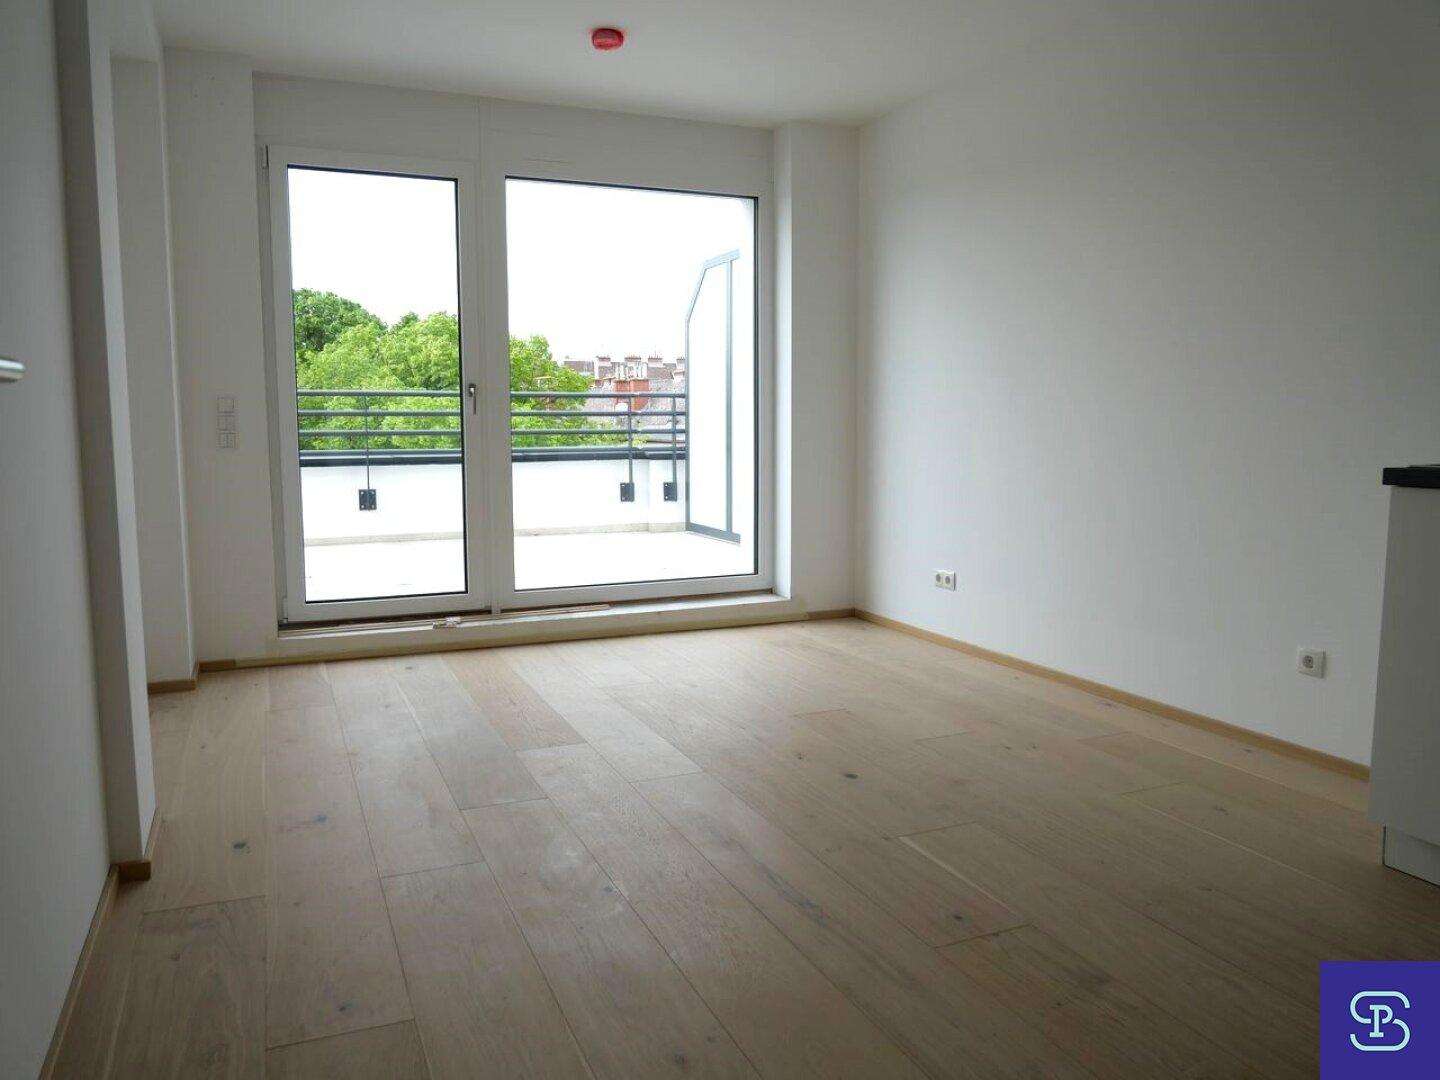 Provisionsfrei: 44m² DG-Erstbezug + 18m² Terrasse mit Einbauküche - 1140 Wien